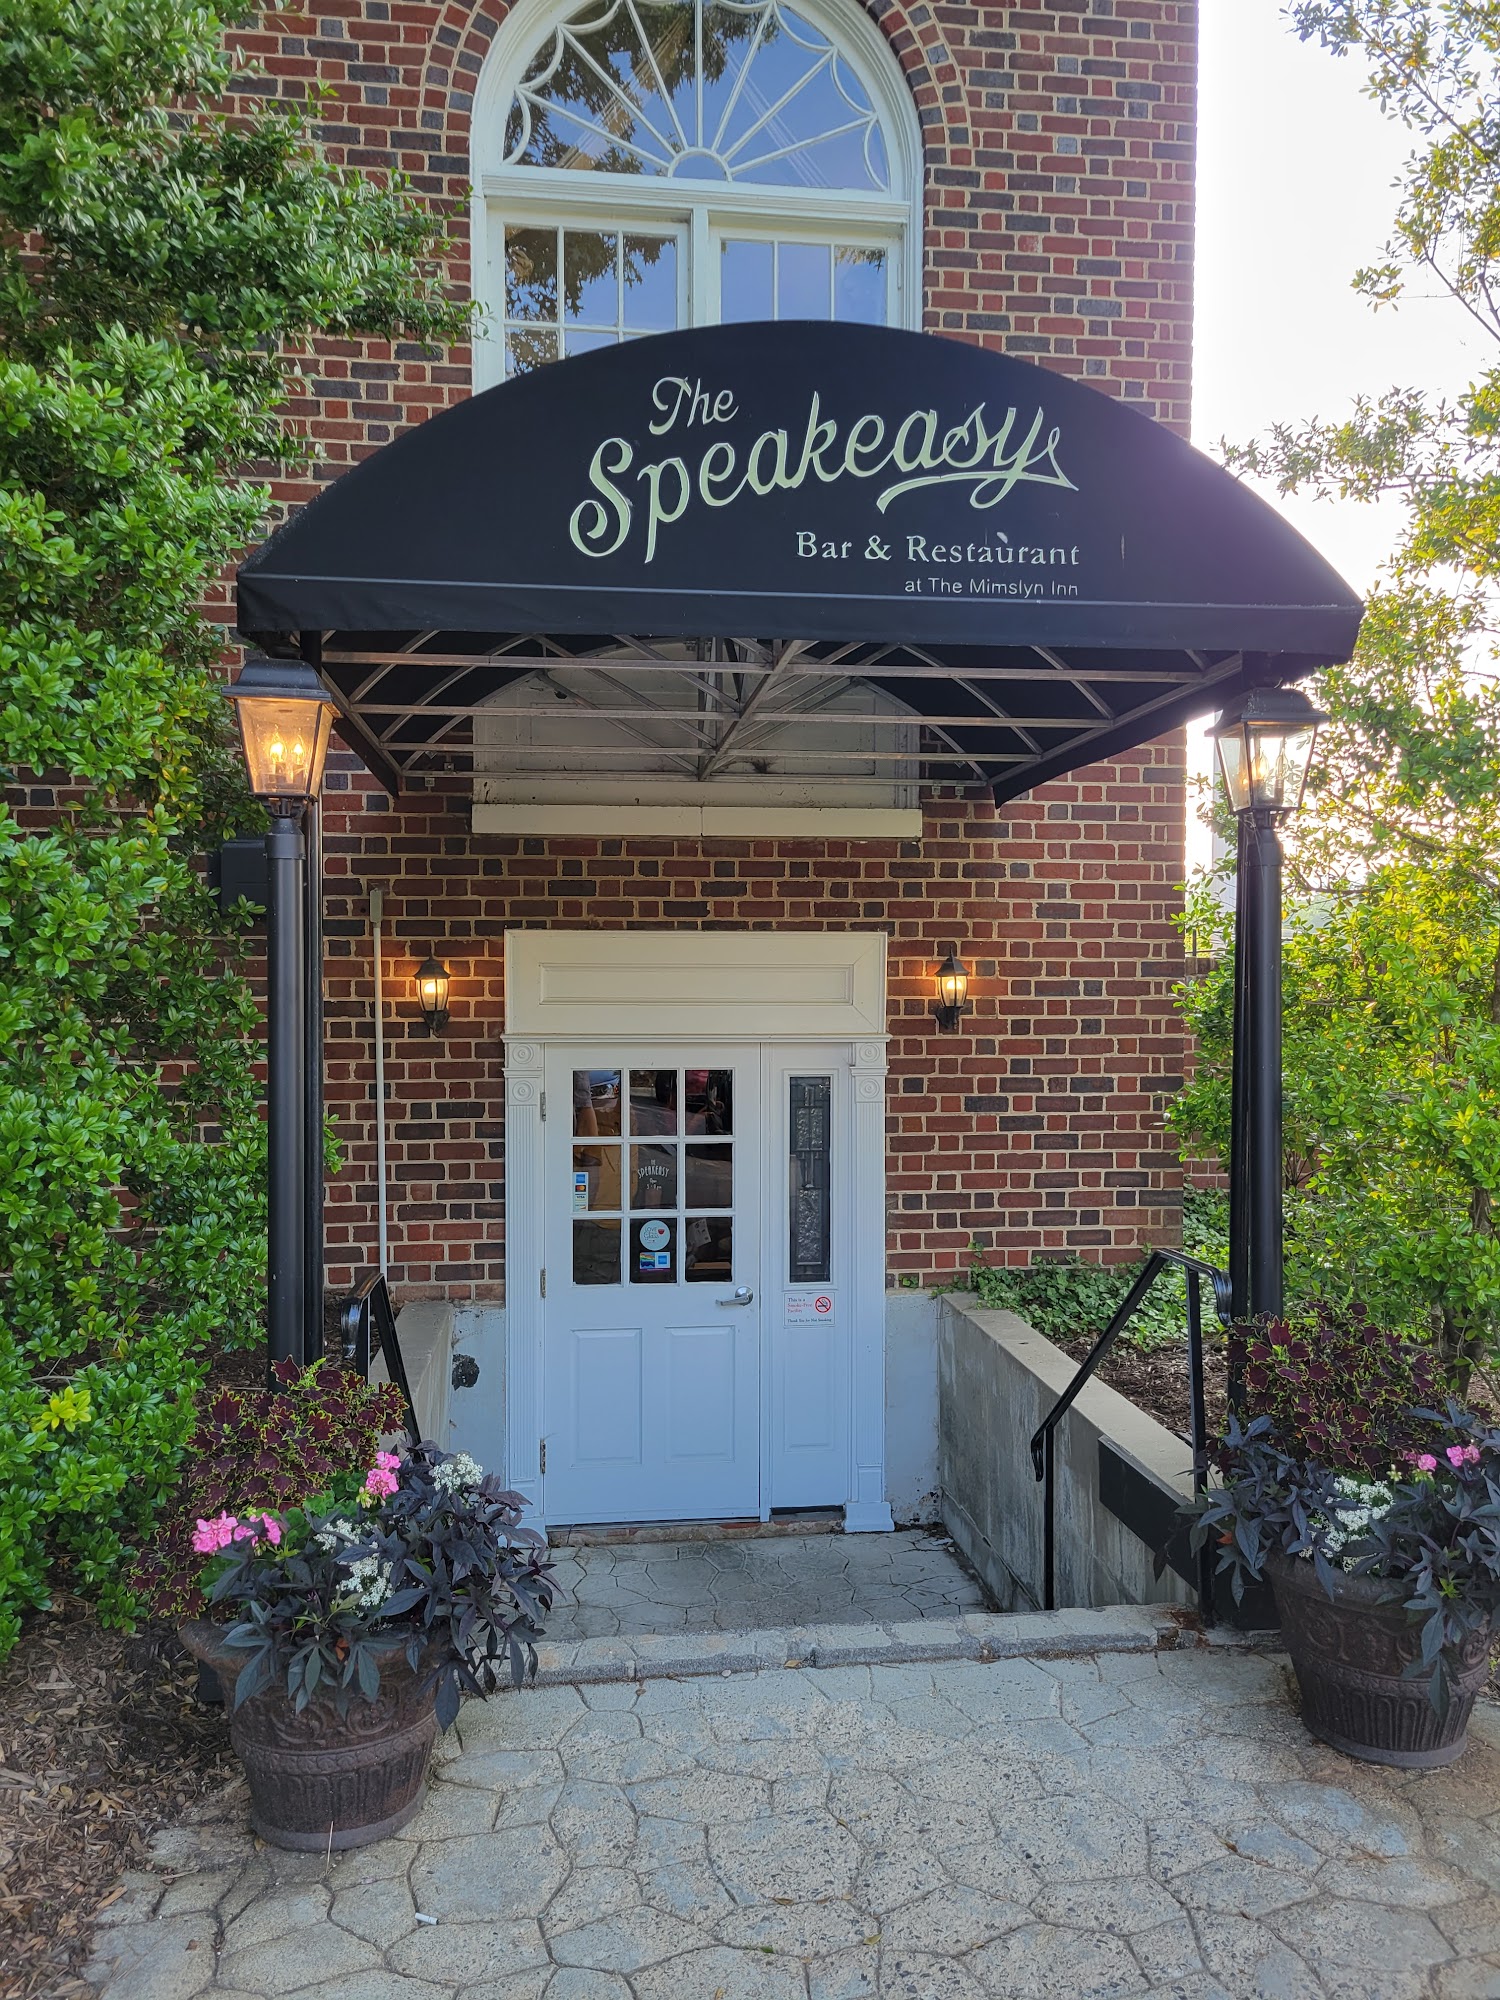 The Speakeasy Bar & Restaurant